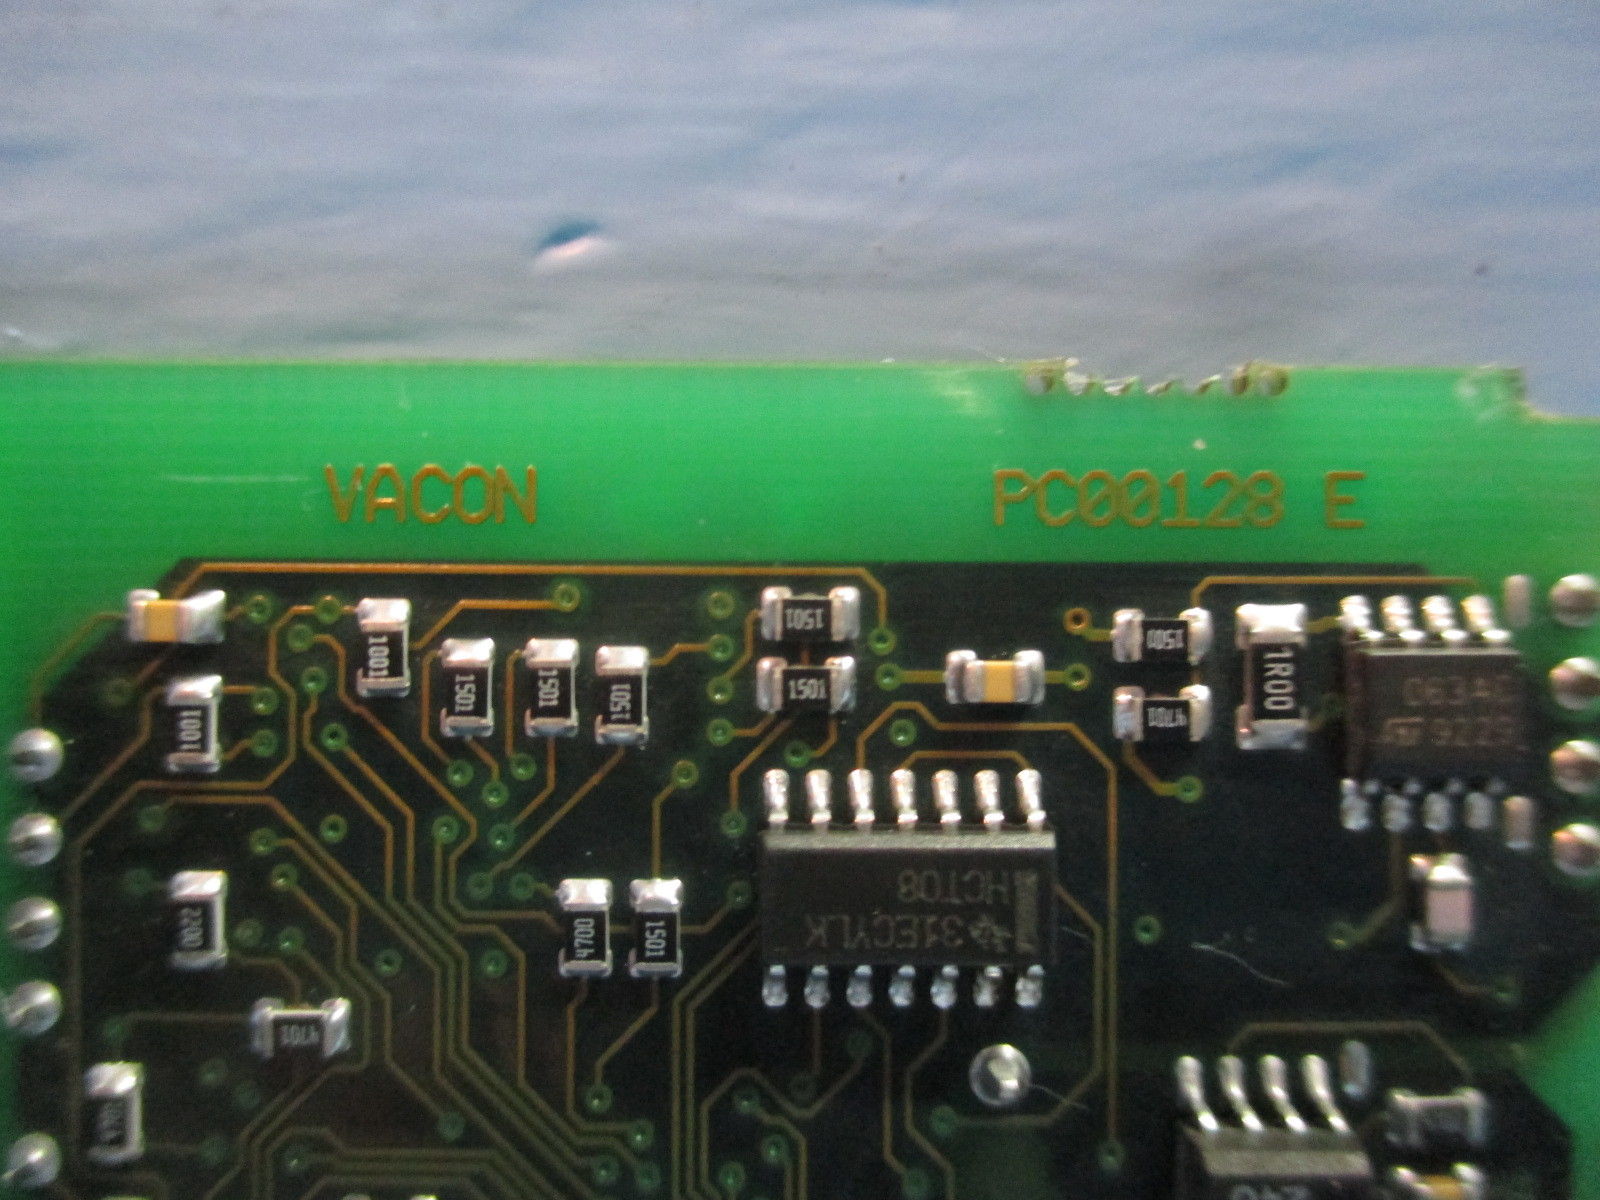 Vacon PC00128-E AC Drive Control PLC Circuit Board SVX9000 V PC00128-E,Vacon,PLC